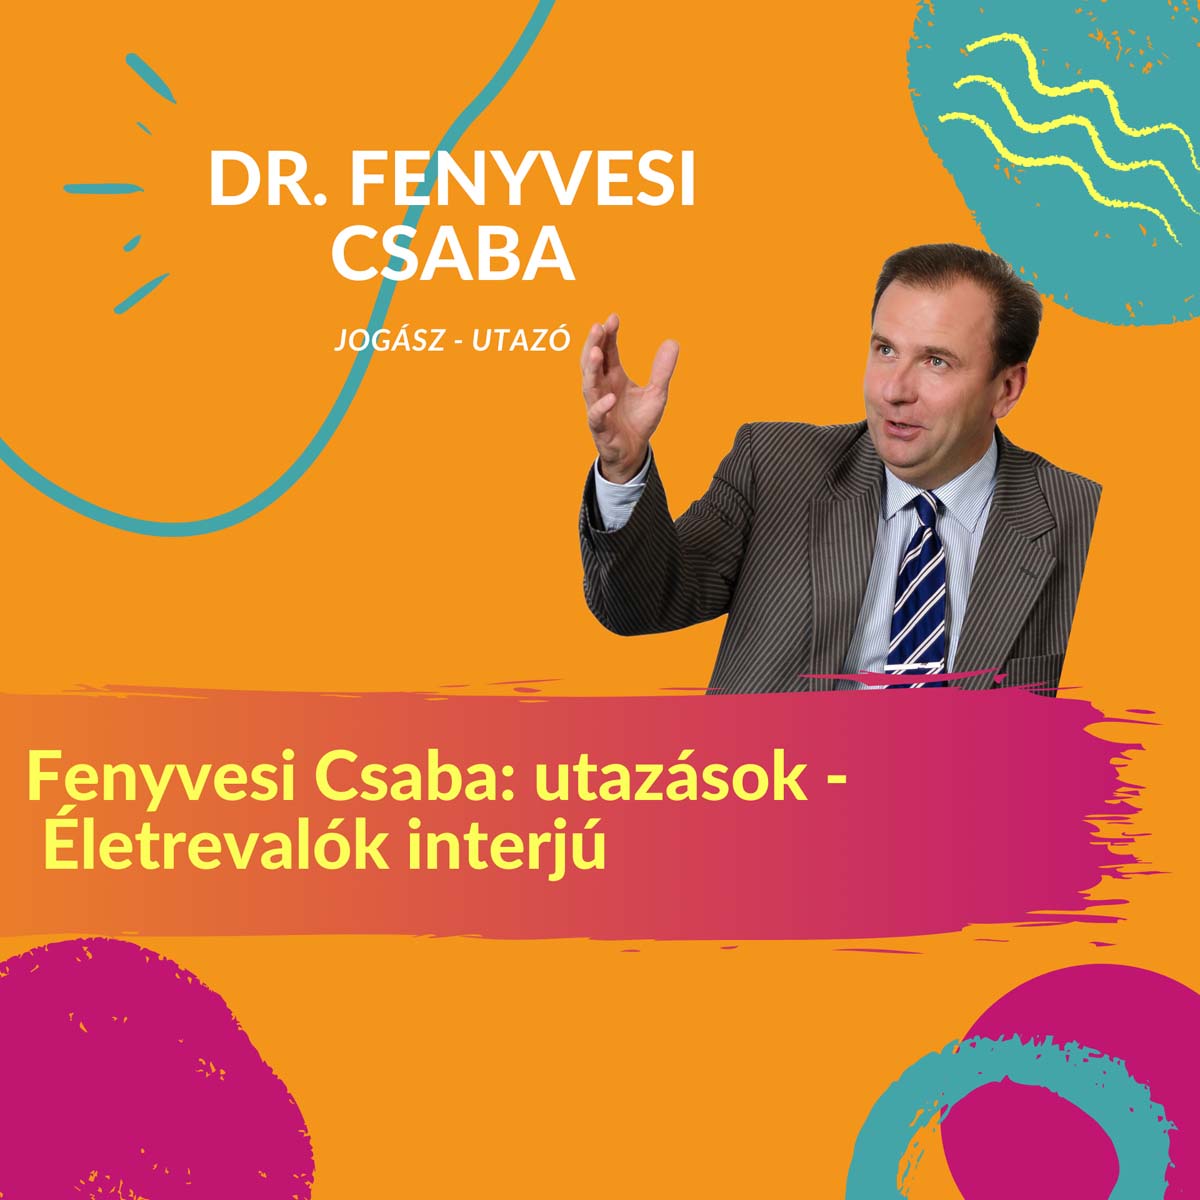 Fenyvesi Csaba: utazások - Életrevalók interjú